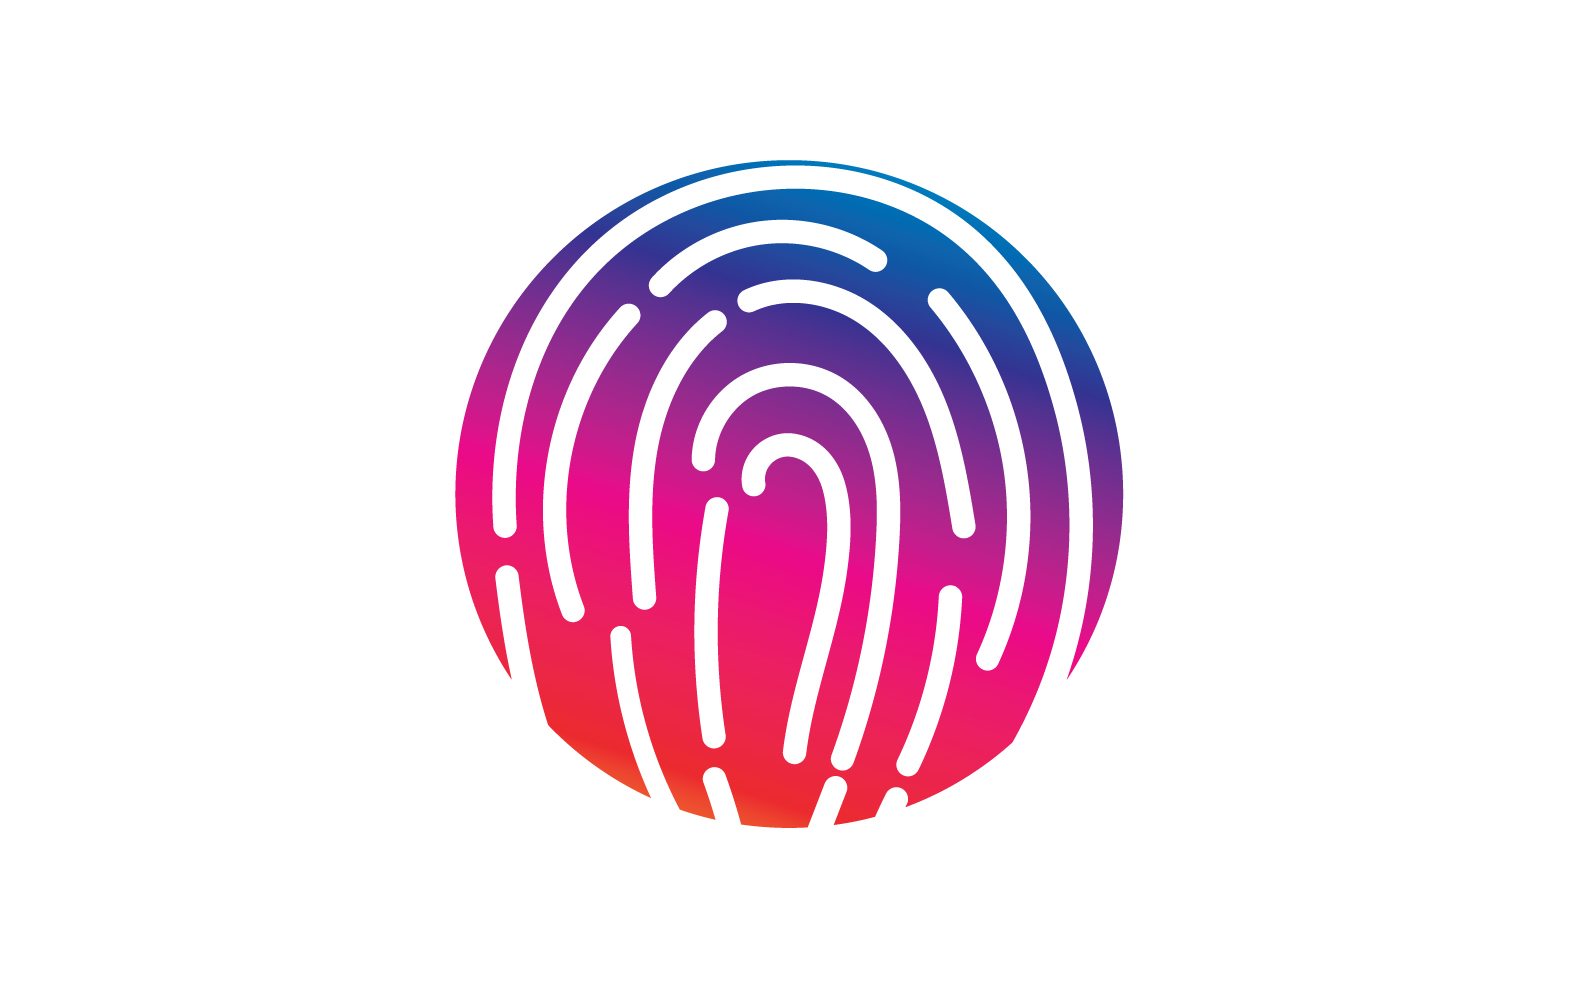 Fingerprint security system logo v7